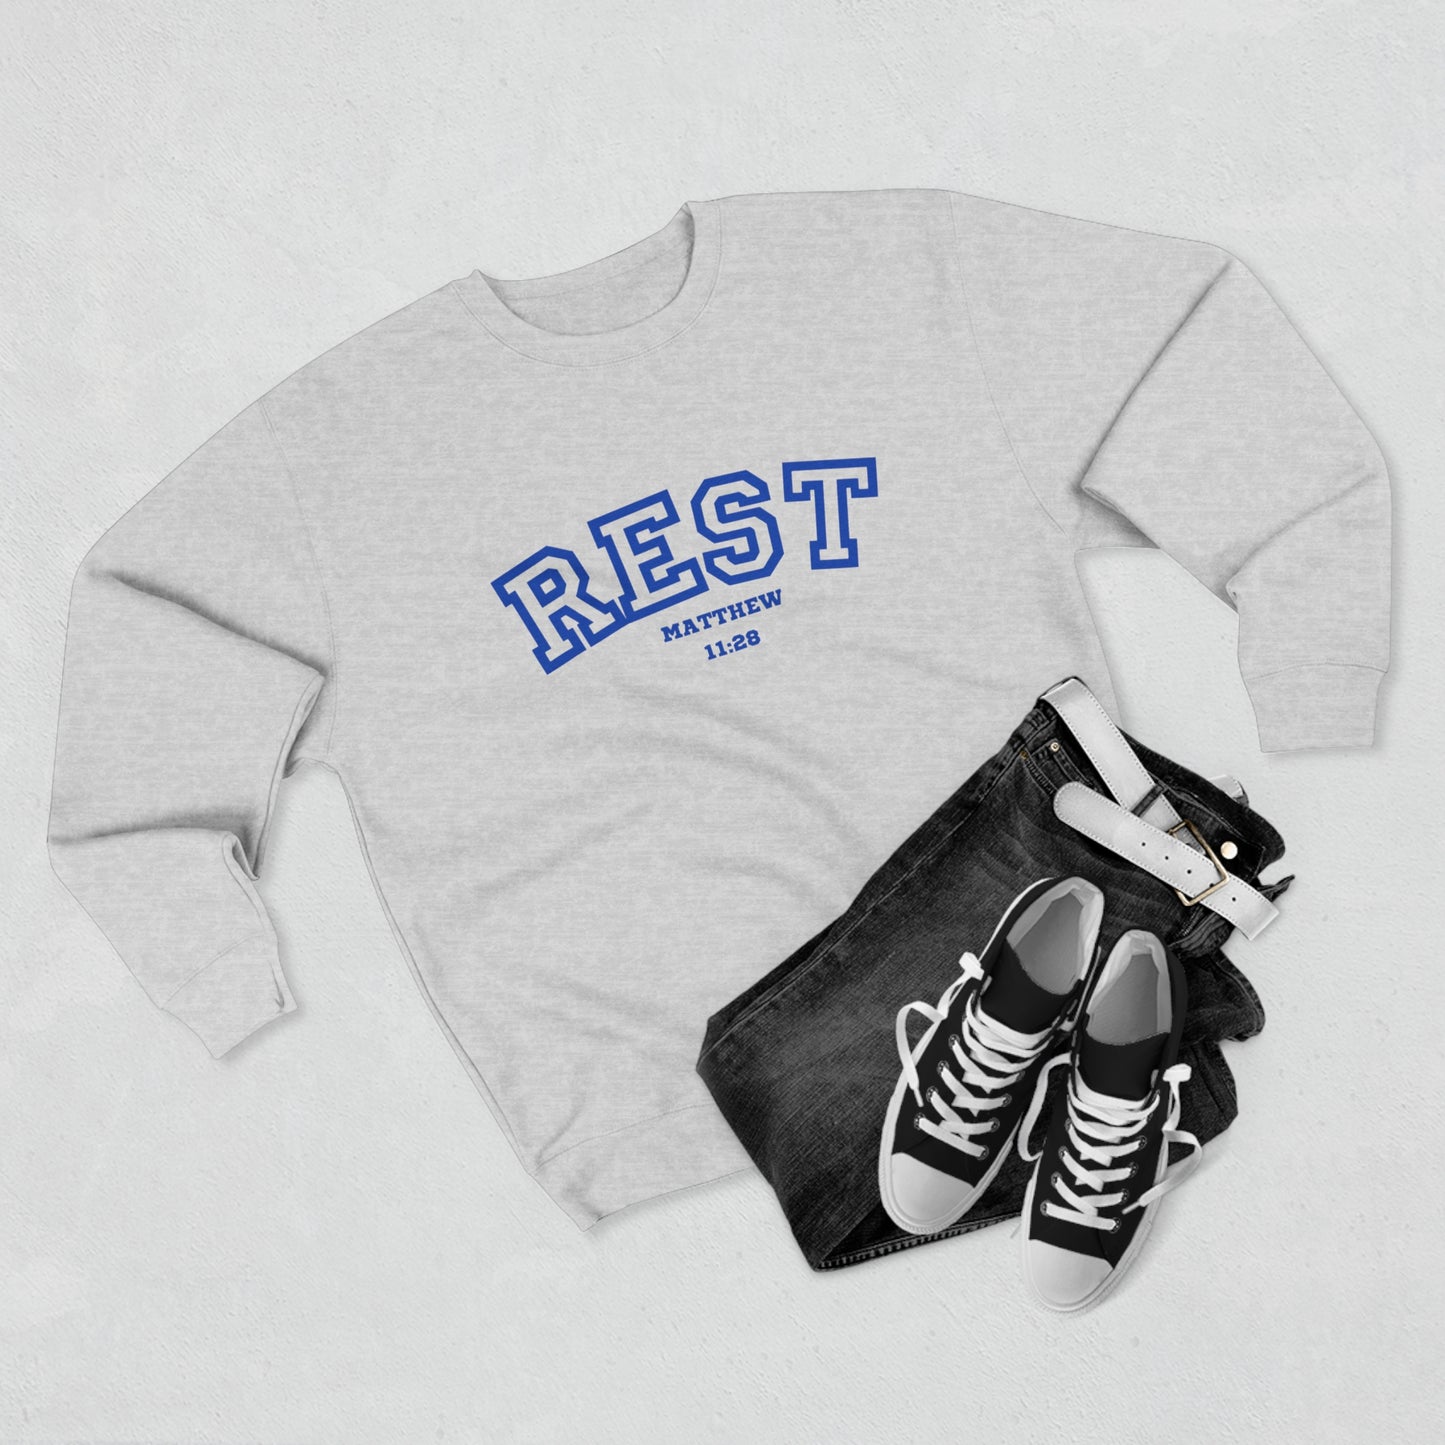 Rest Sweatshirt - Dear Father God